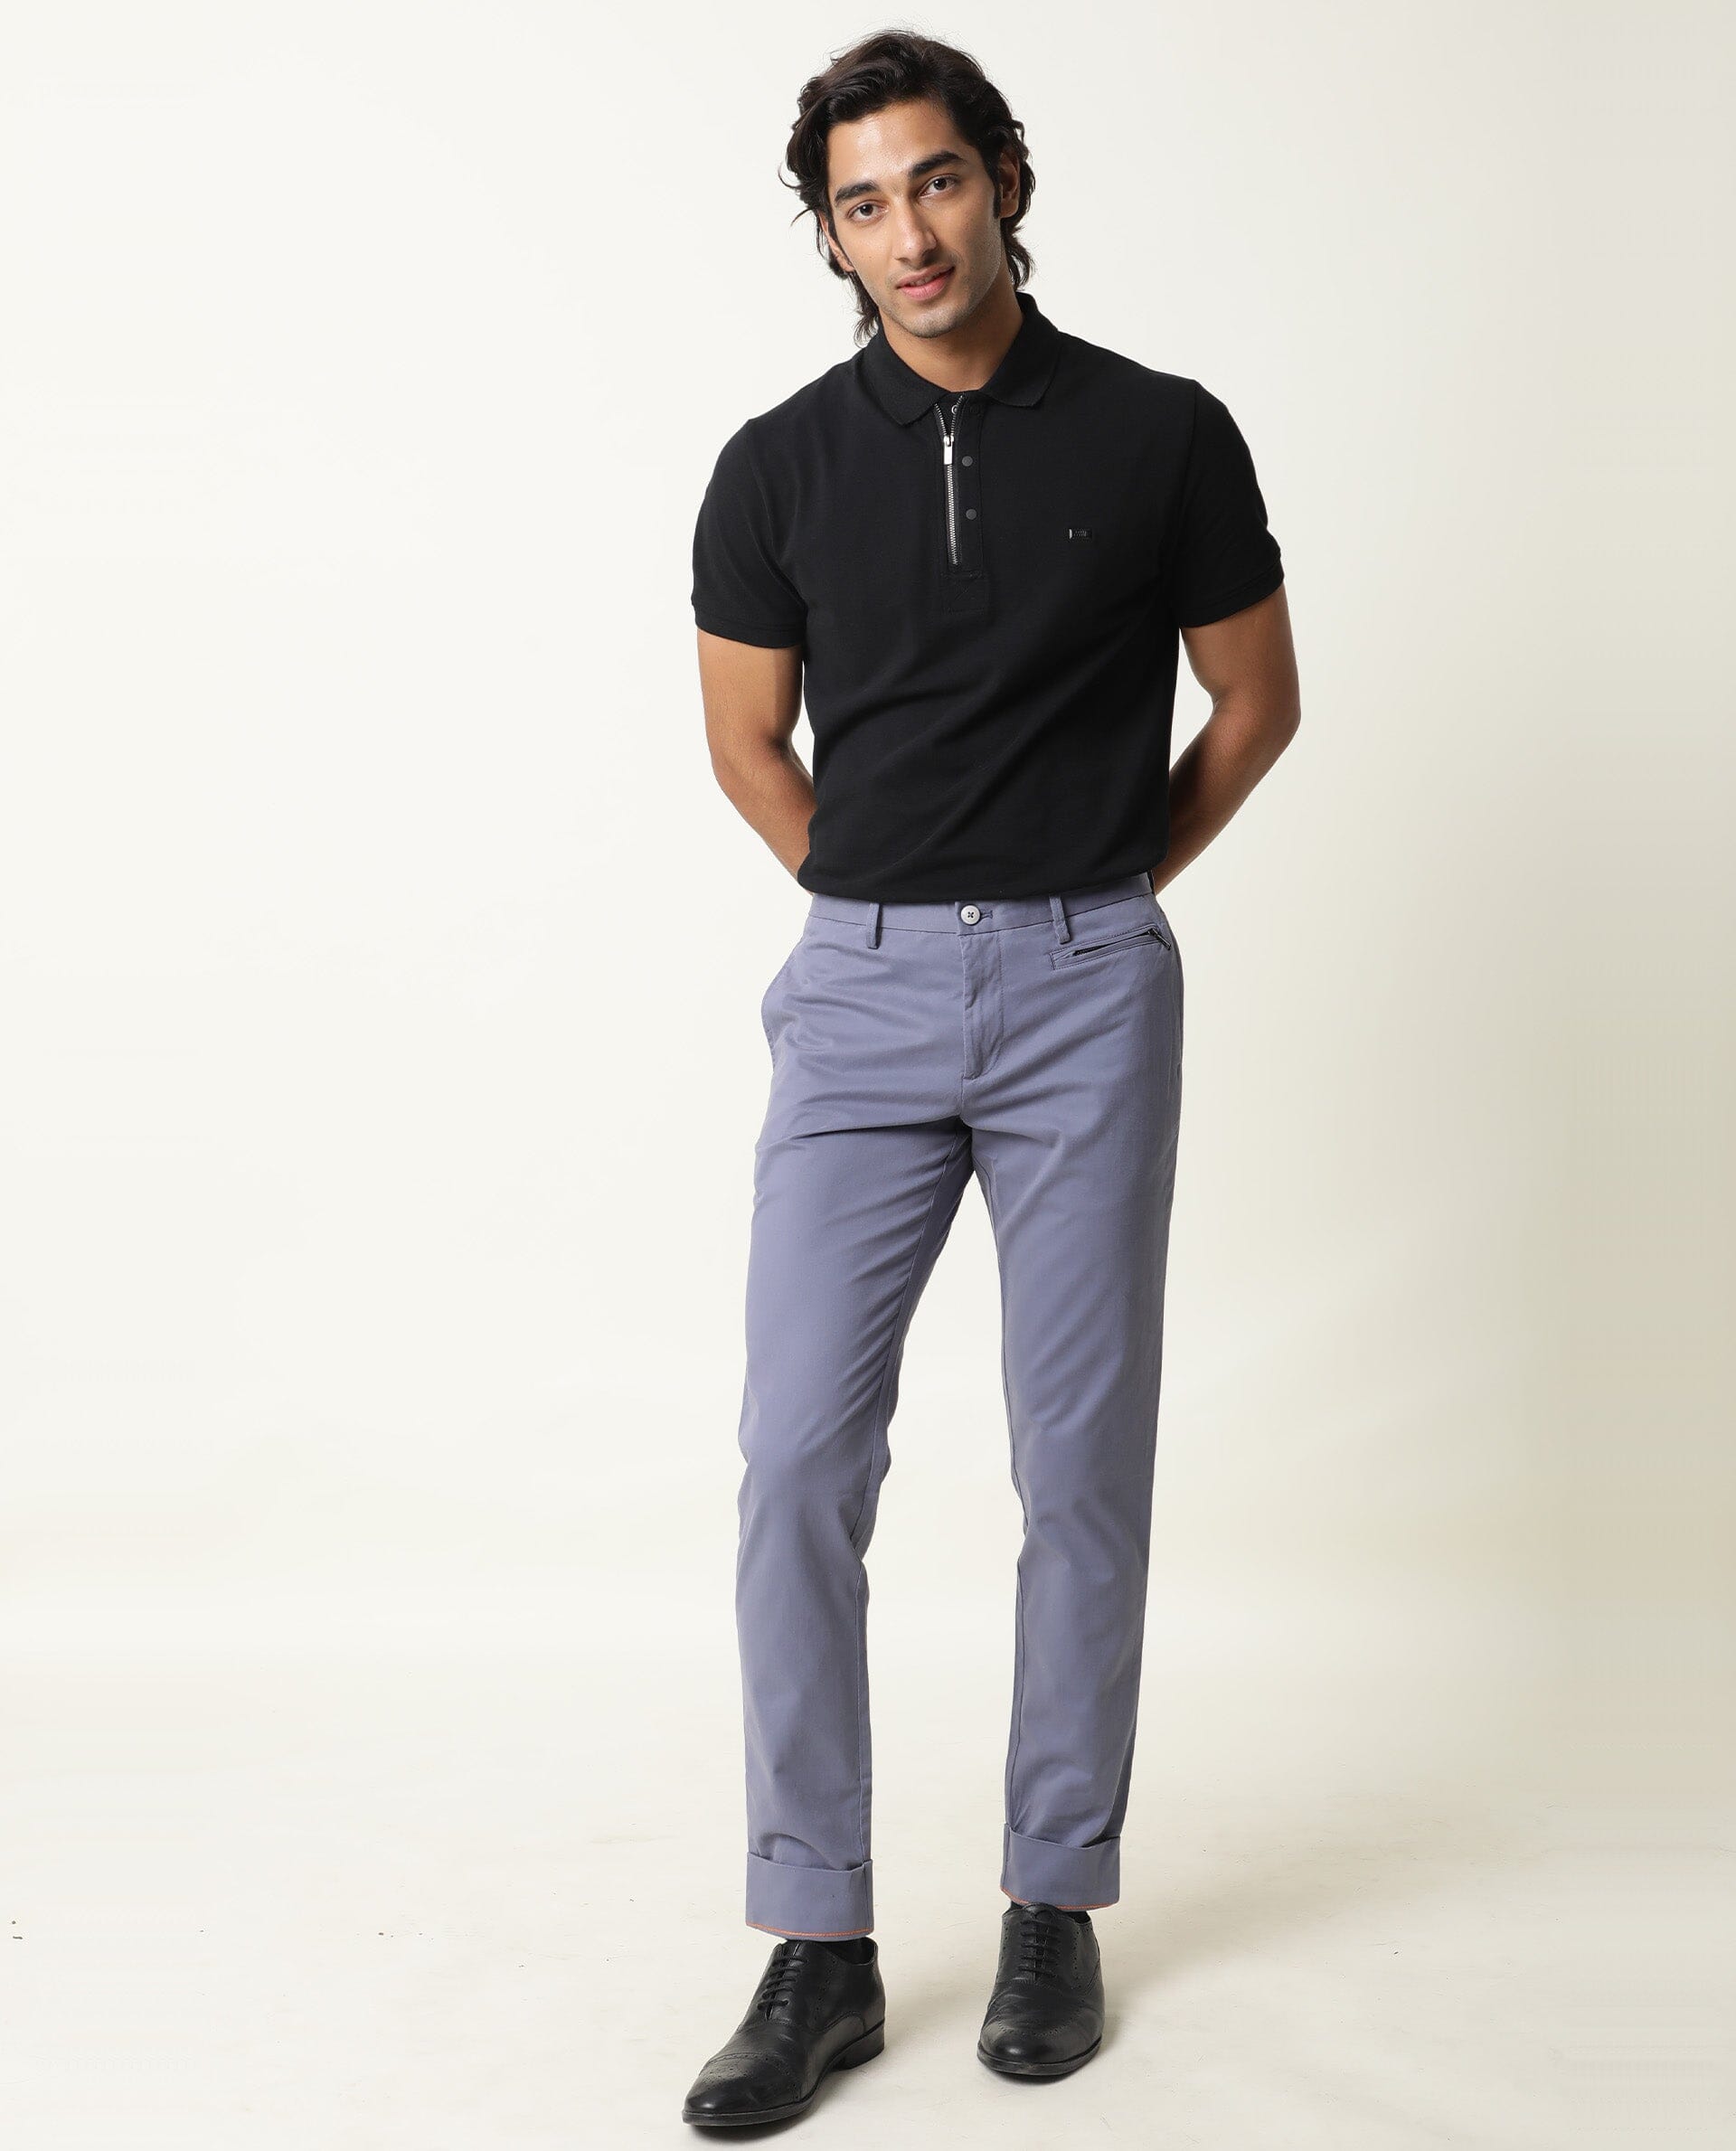 Buy Grey Slim Fit Trousers for Men Online at Killer  490795